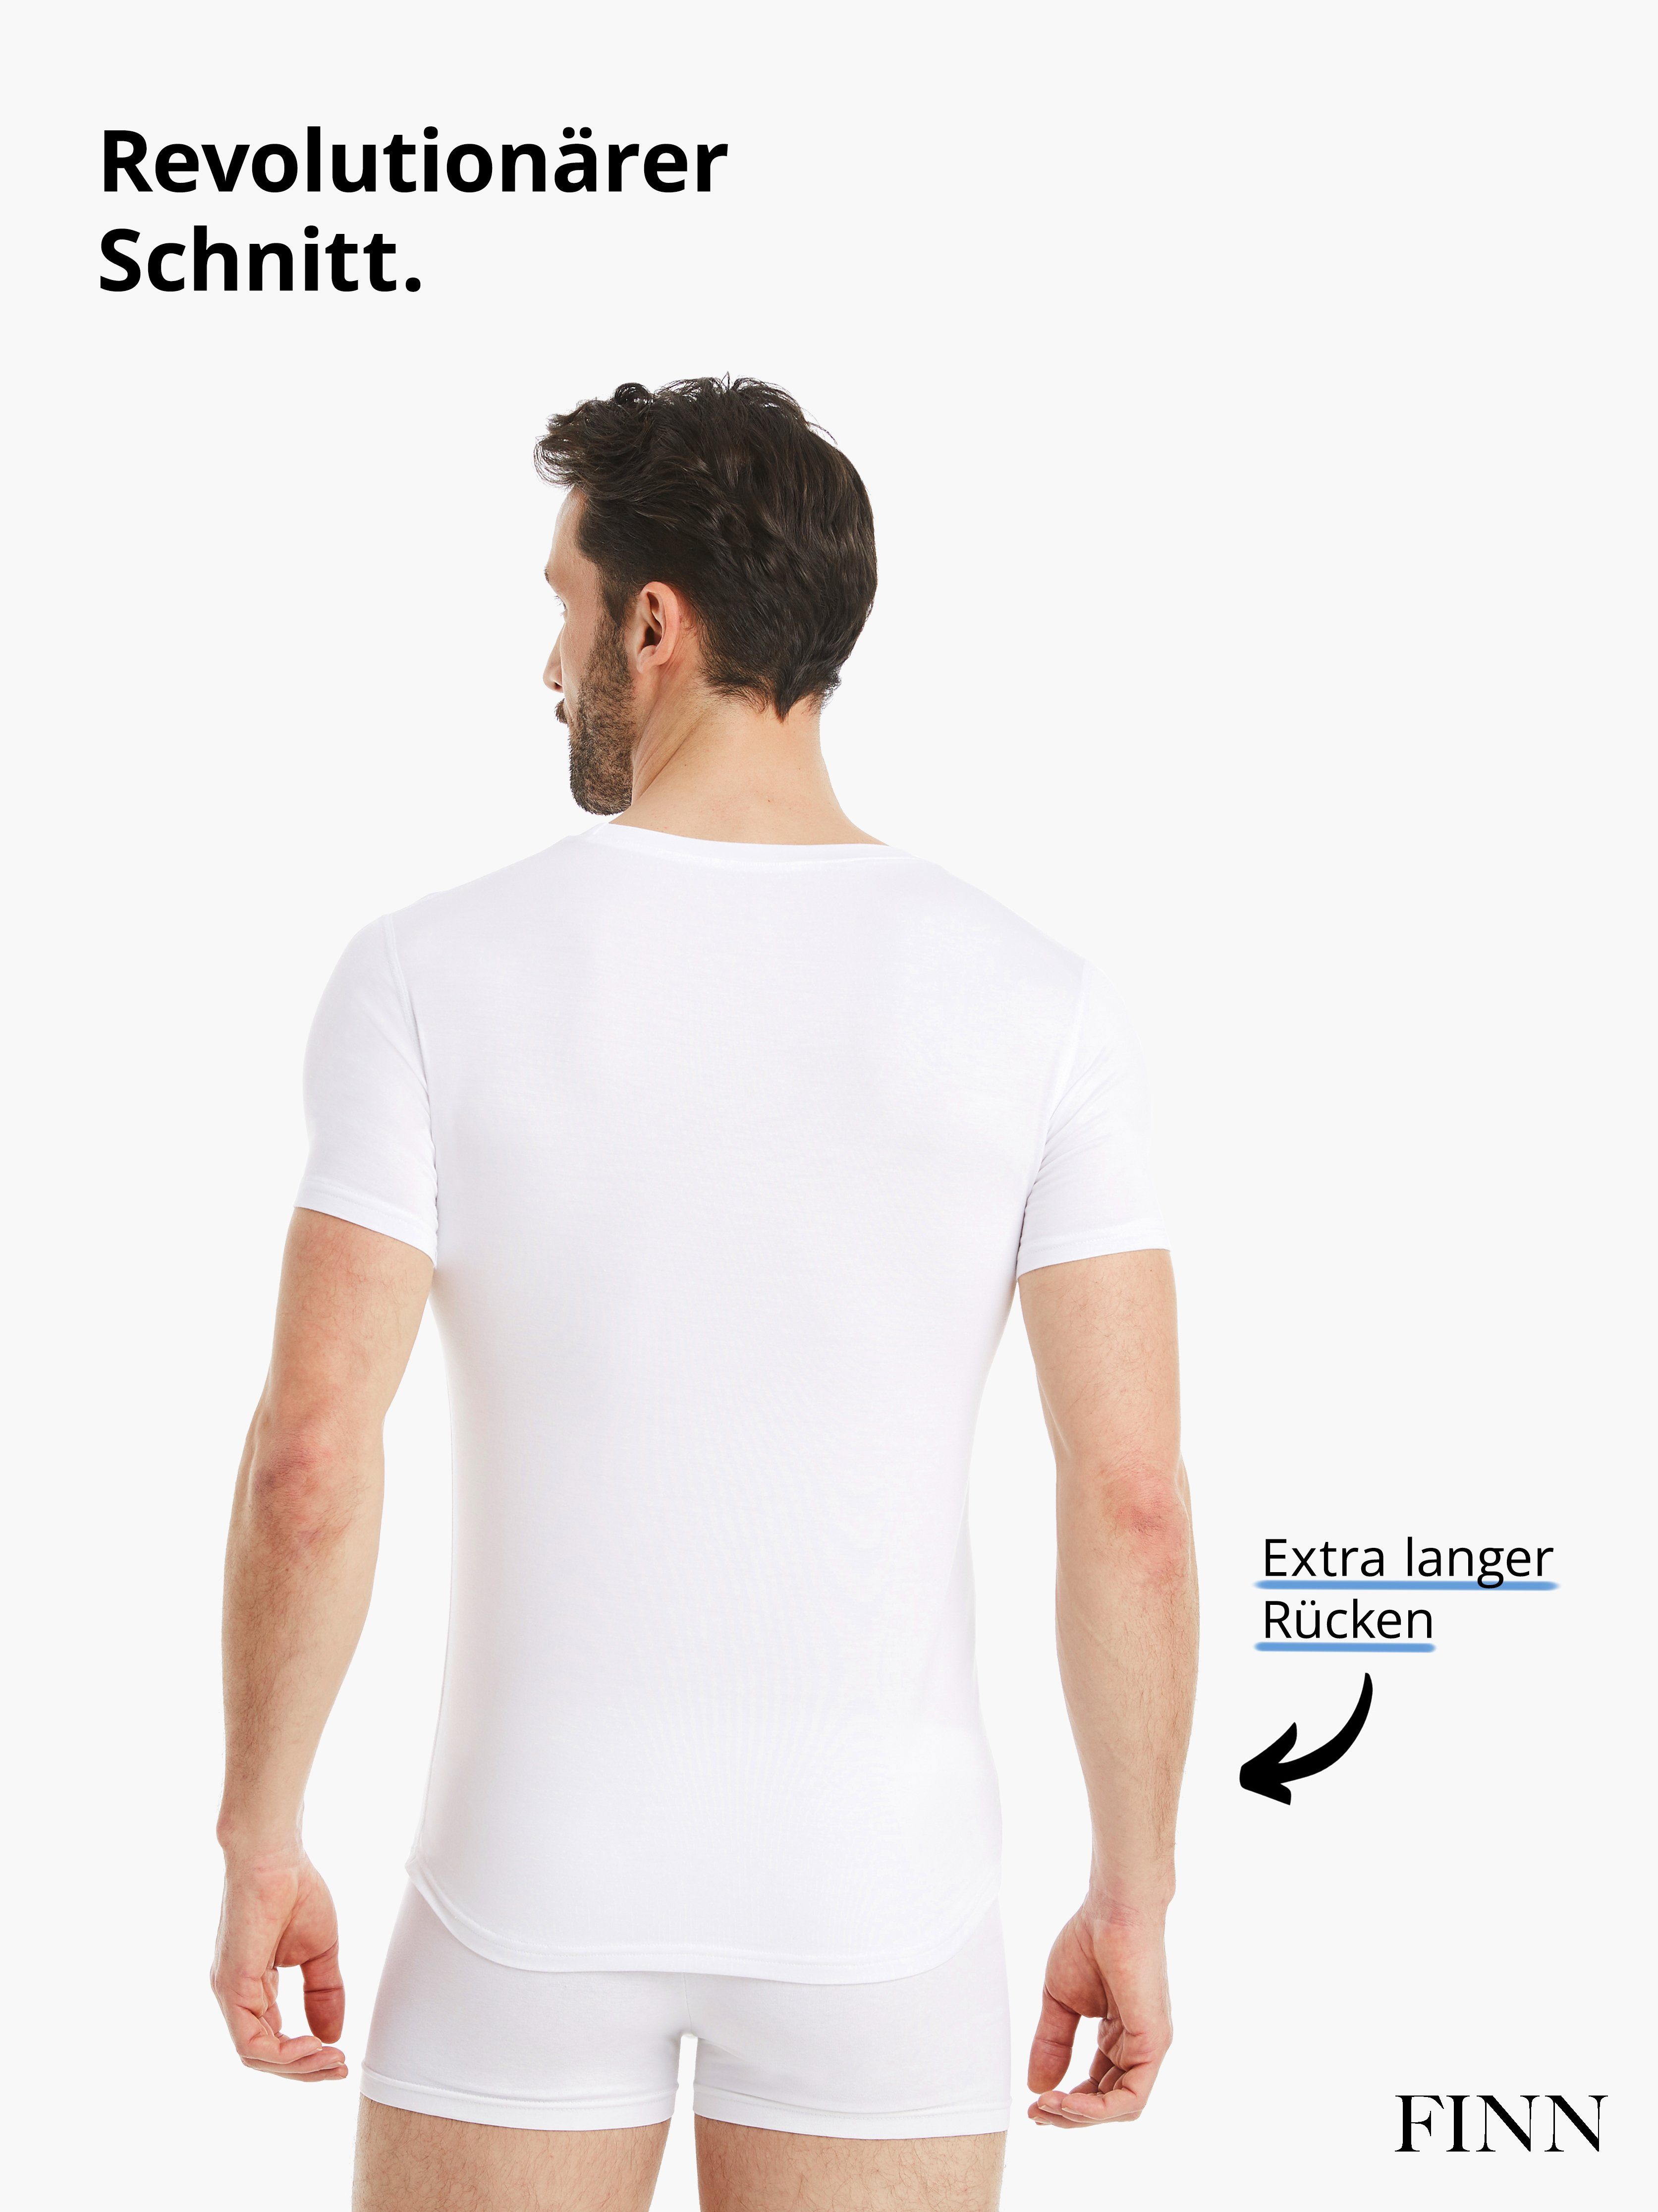 mit Herren FINN Unterhemd Design Micro-Modal maximaler Tragekomfort Weiß Rundhals Unterhemd Kurzarm Business Stoff, feiner